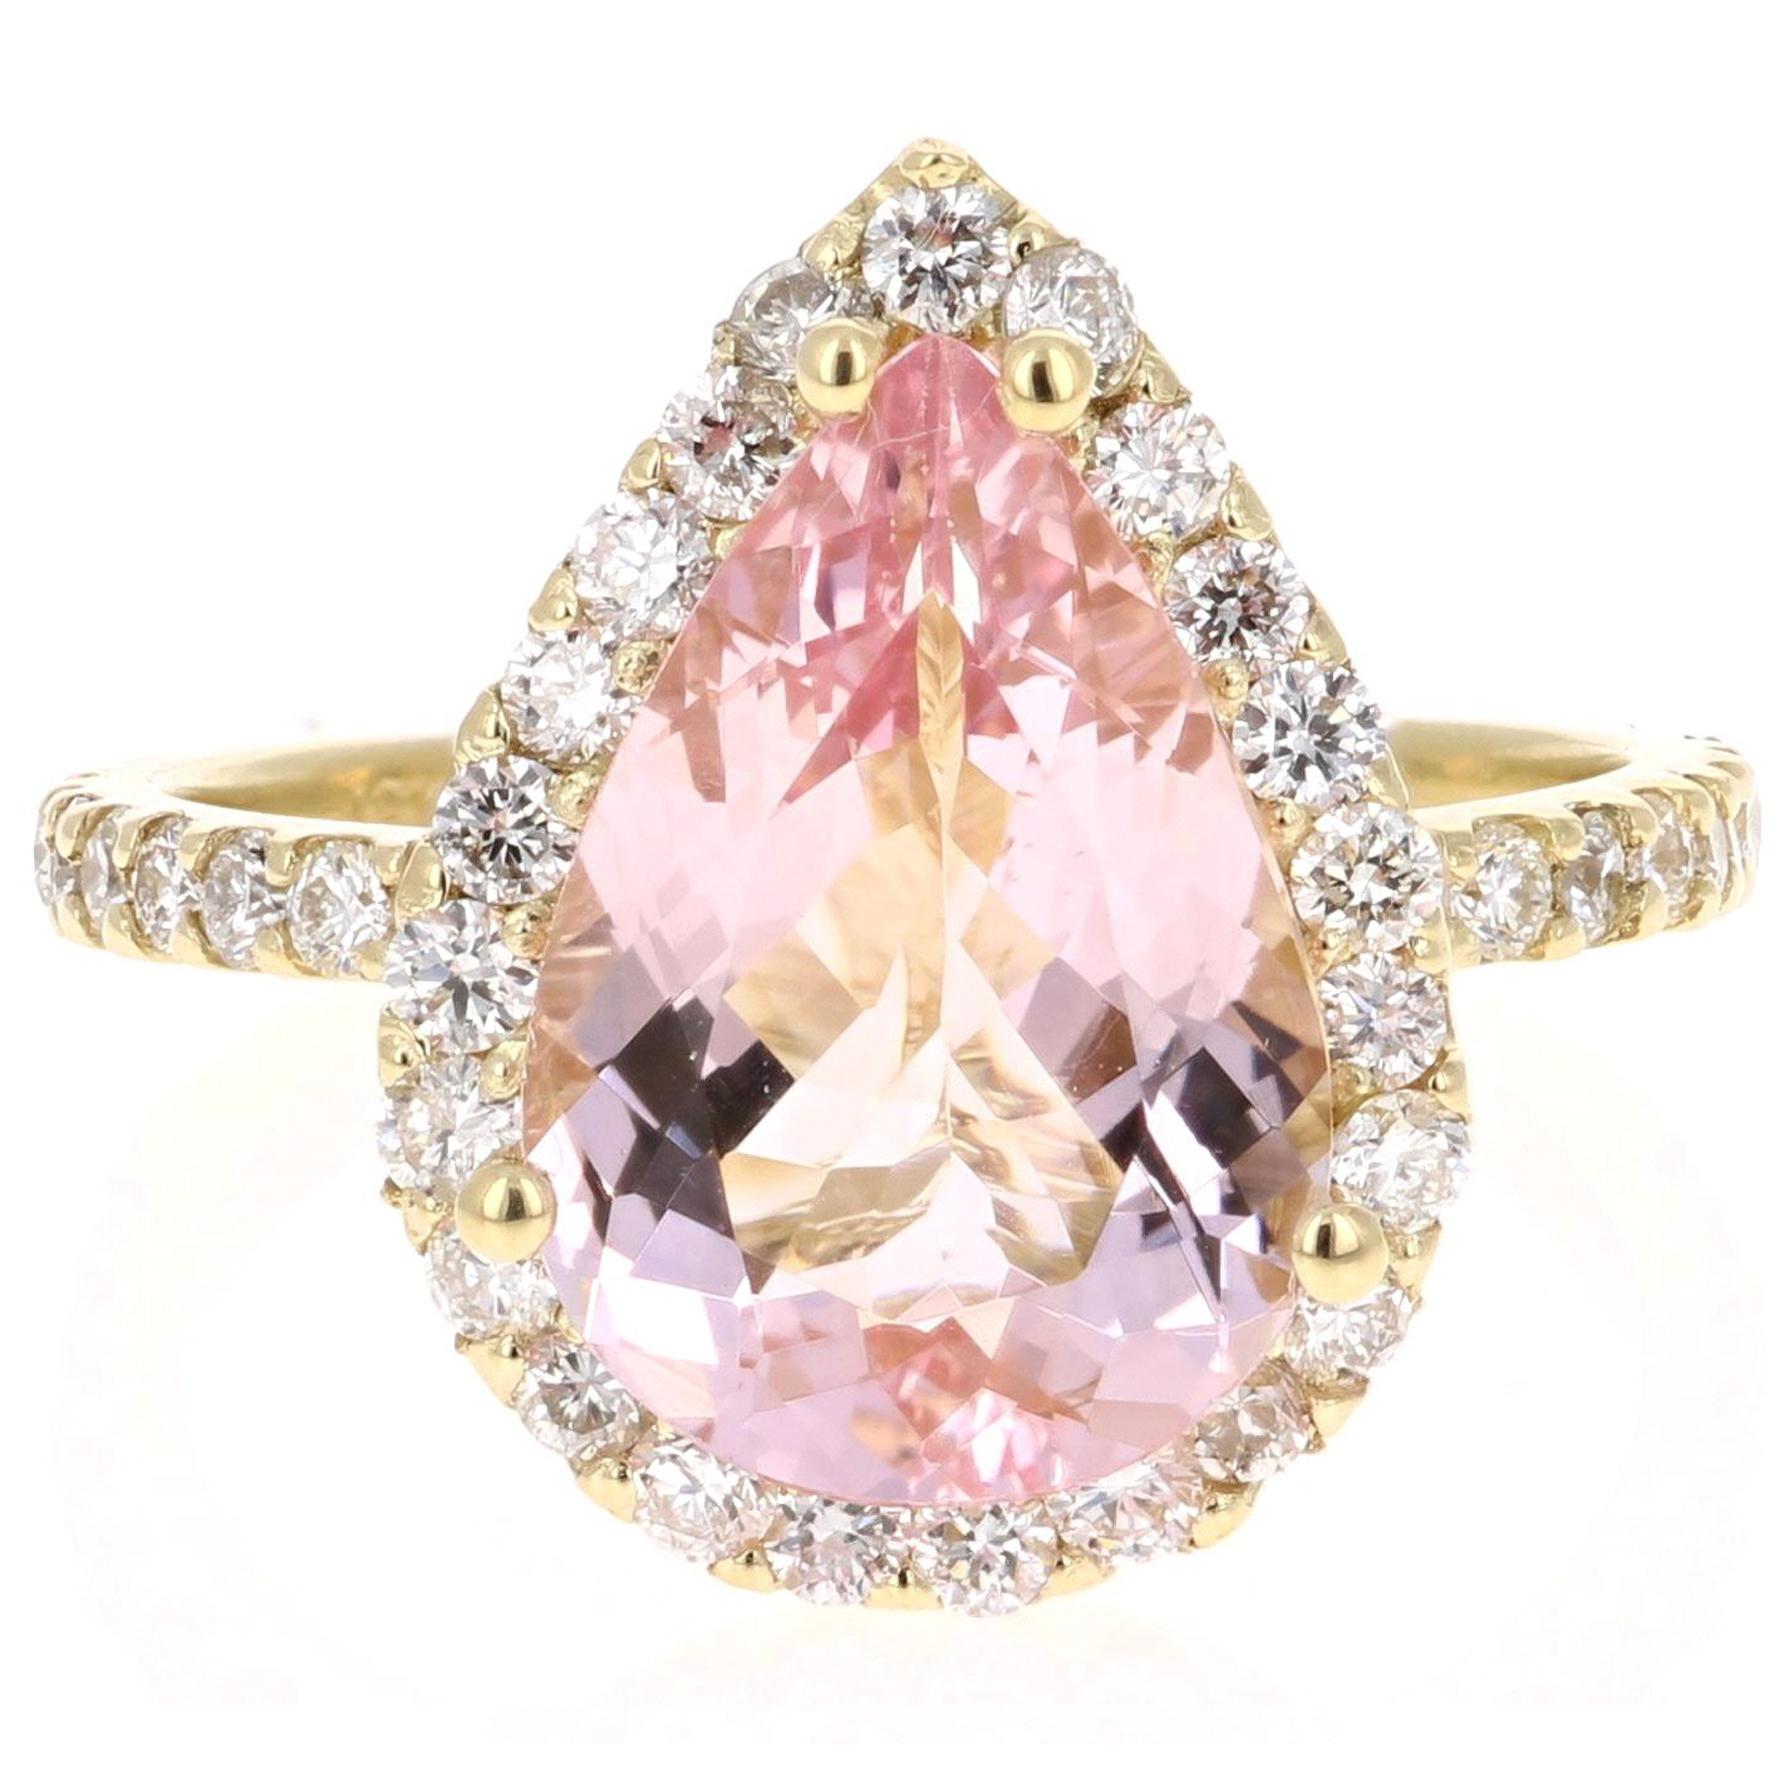 4.12 Carat Pear Cut Pink Morganite Diamond 18 Karat Yellow Gold Engagement Ring